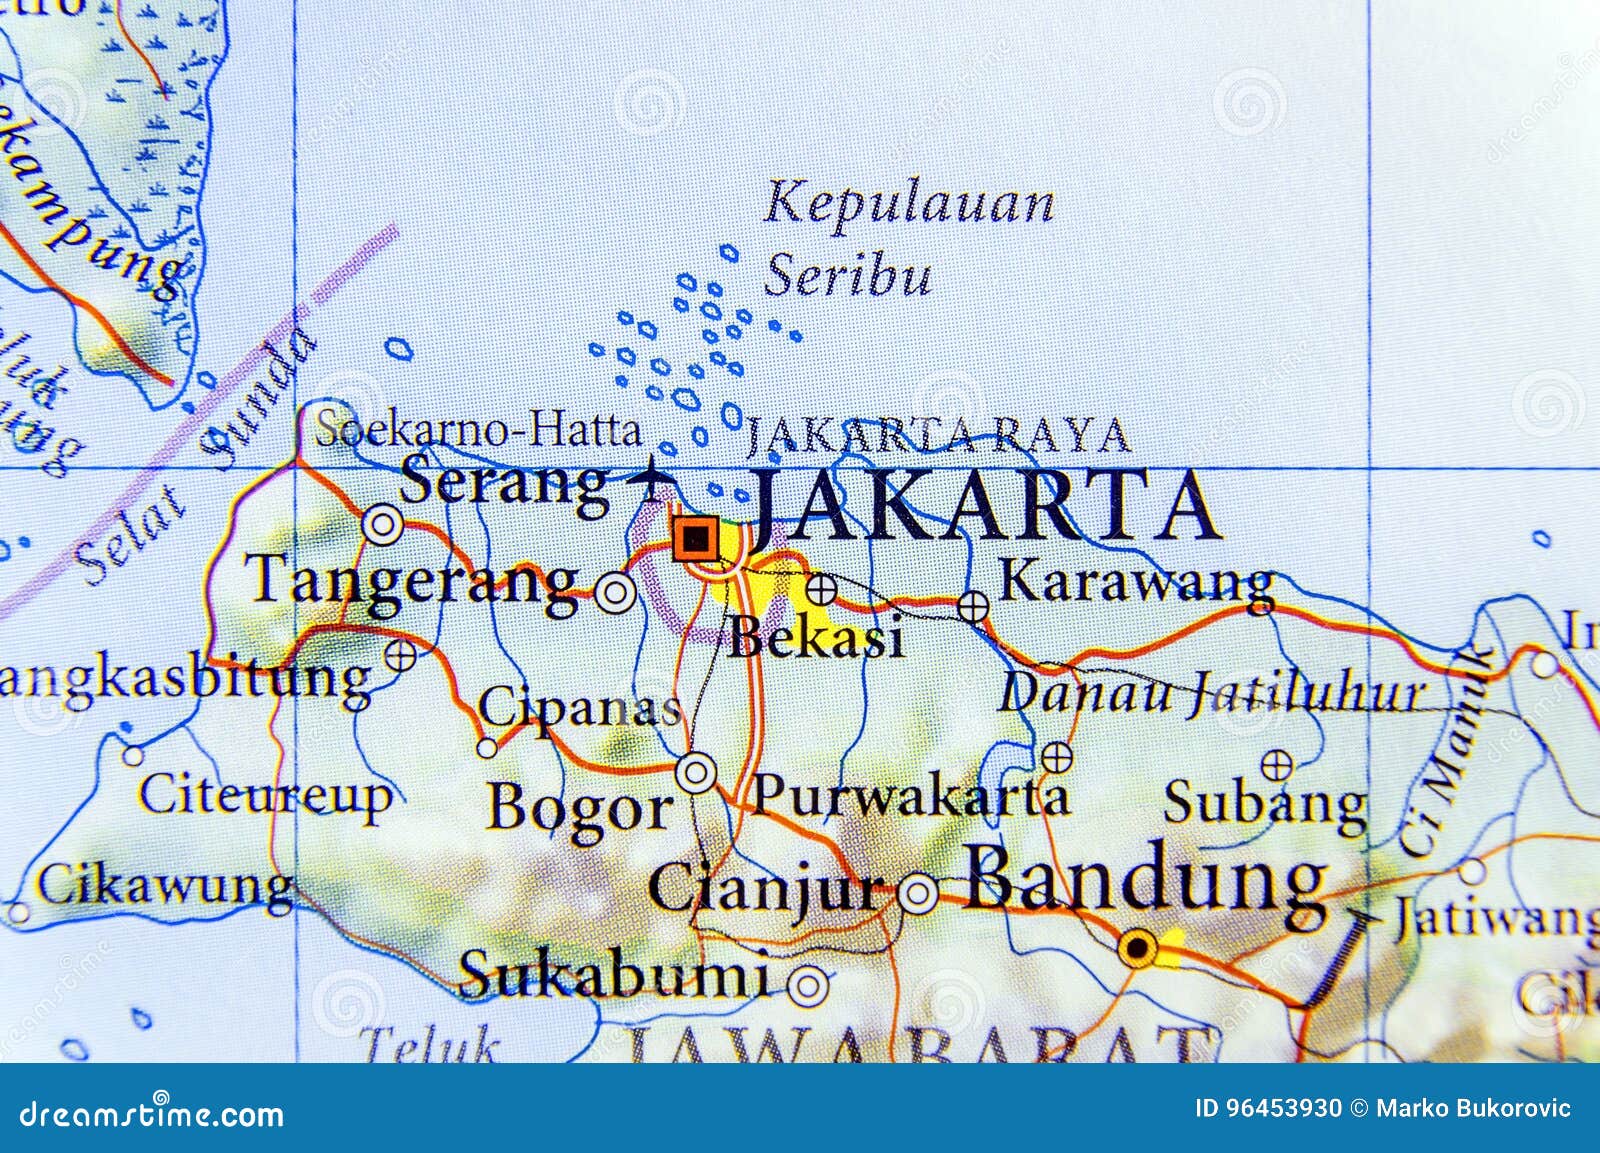 世界地图--印尼地图,印度尼西亚地图 - 世界地图全图 - 地理教师网